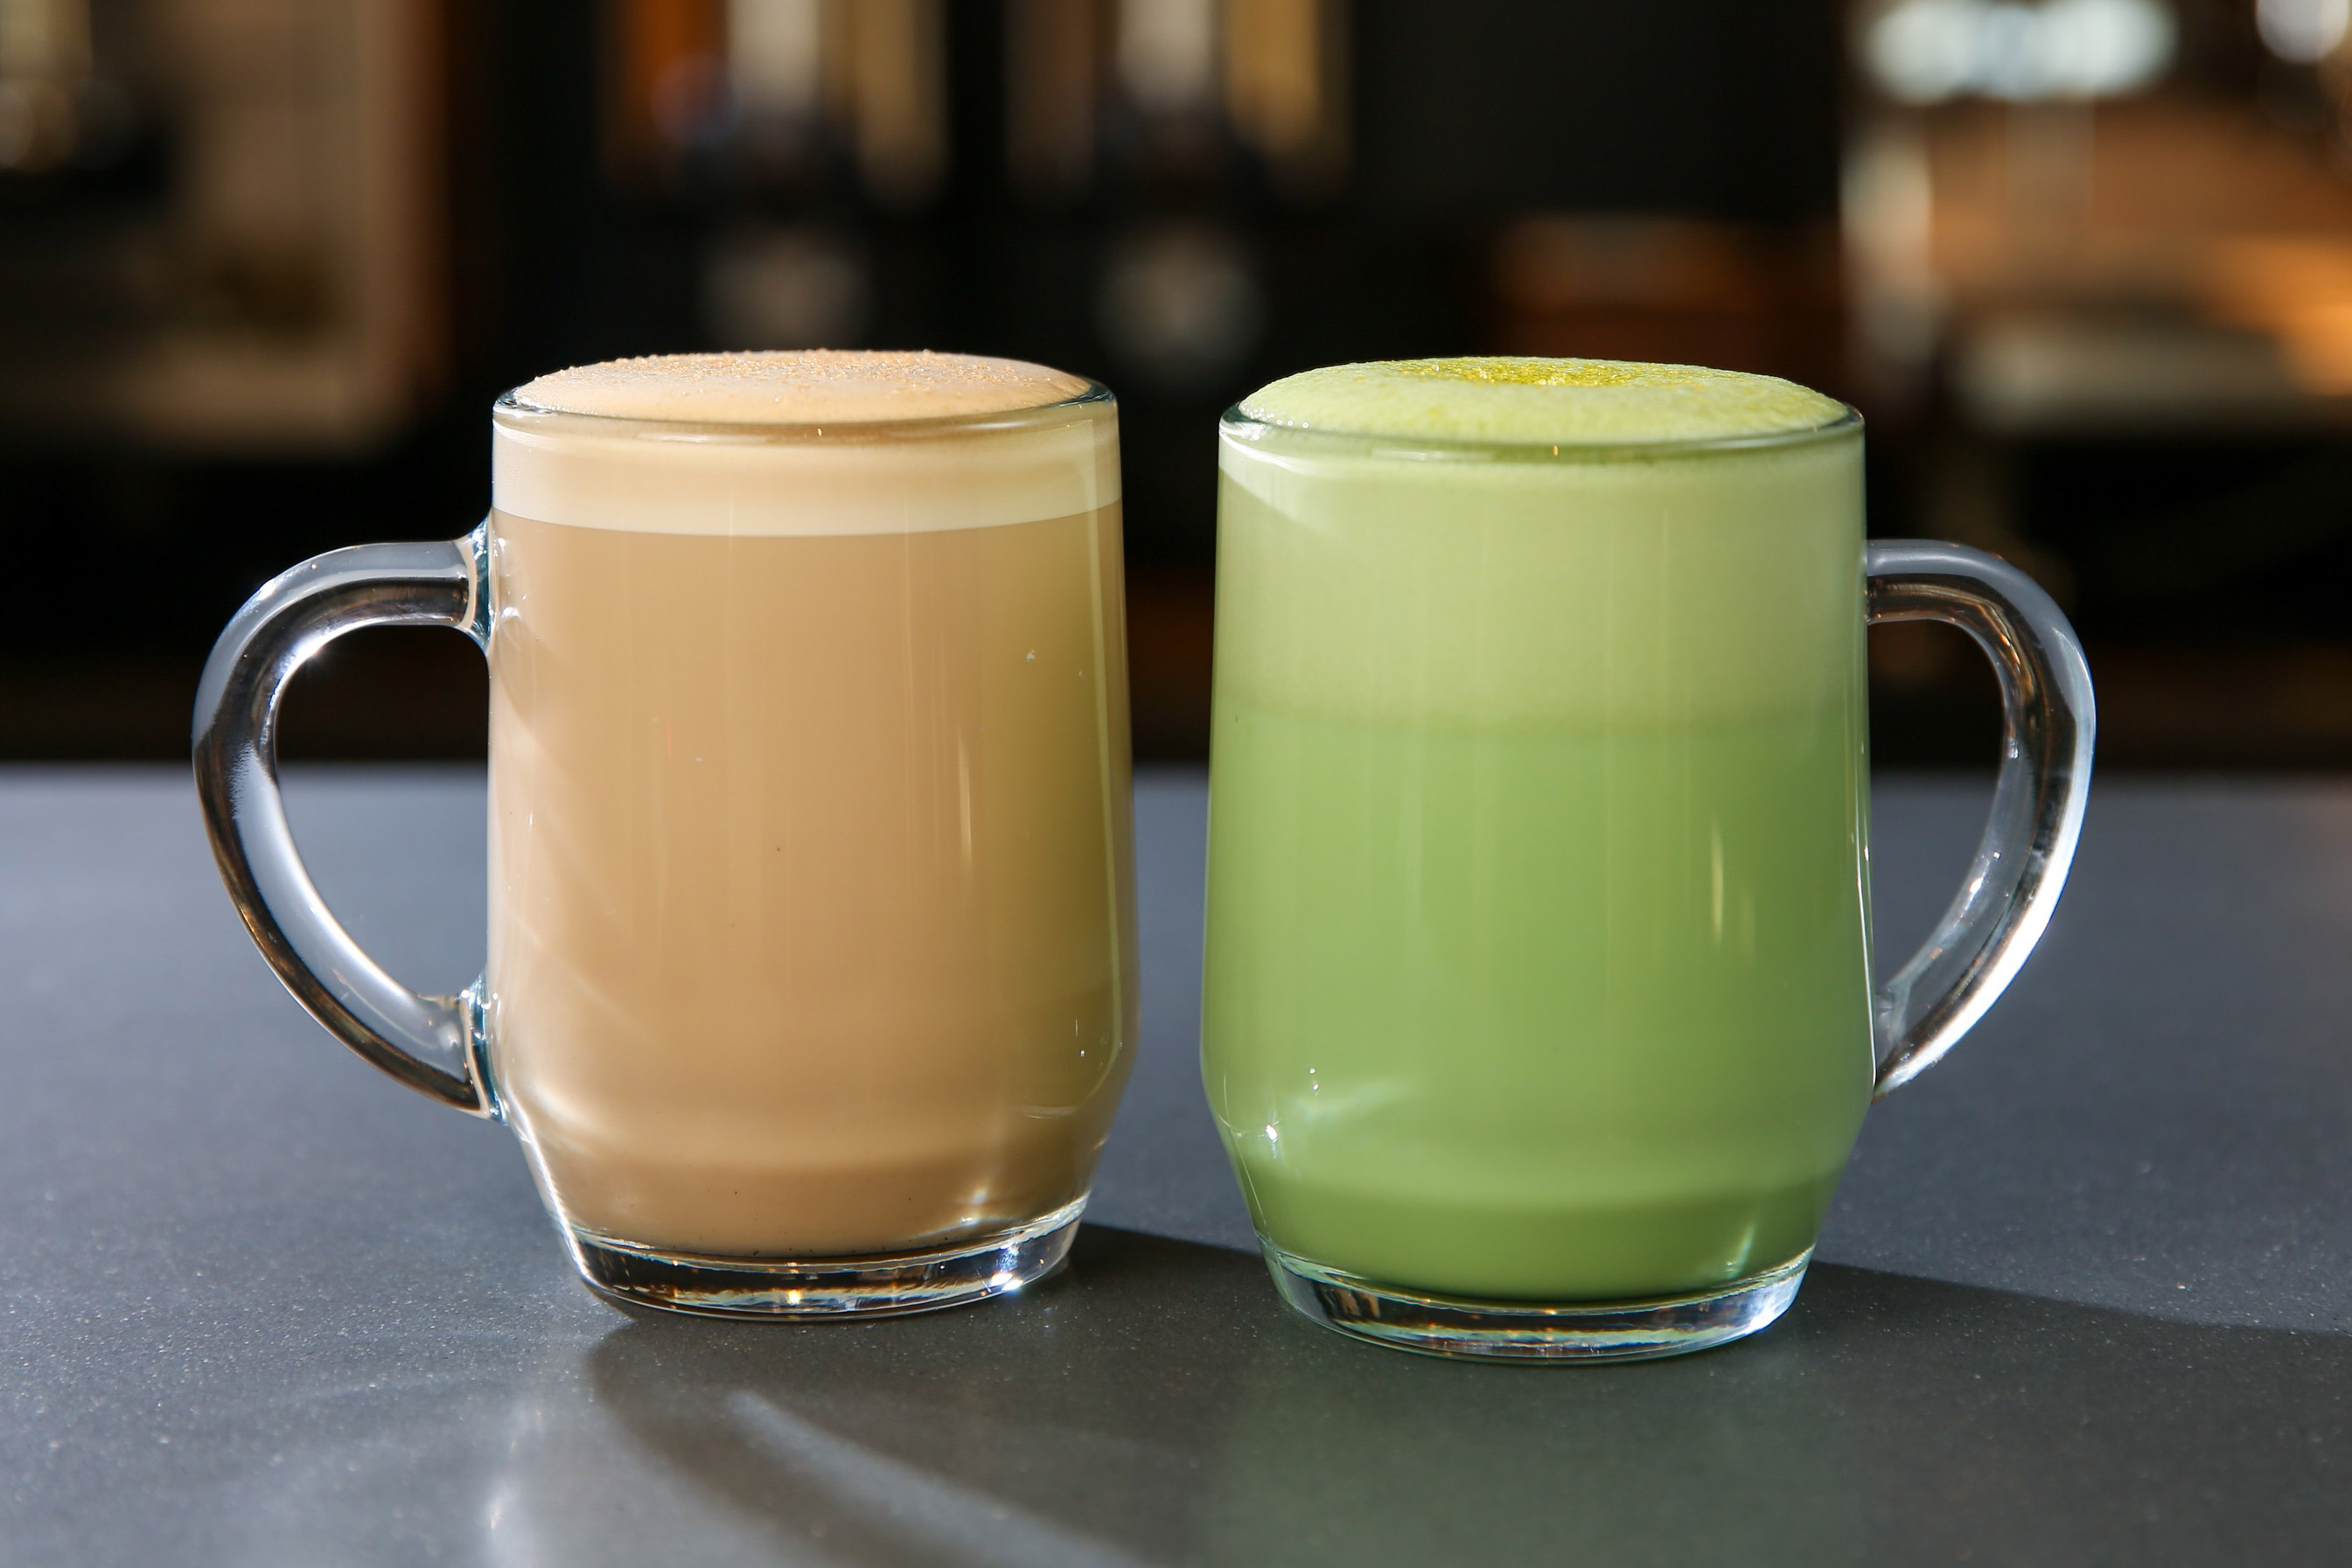 butterscotch-latte-starbucks-citrus-green-tea